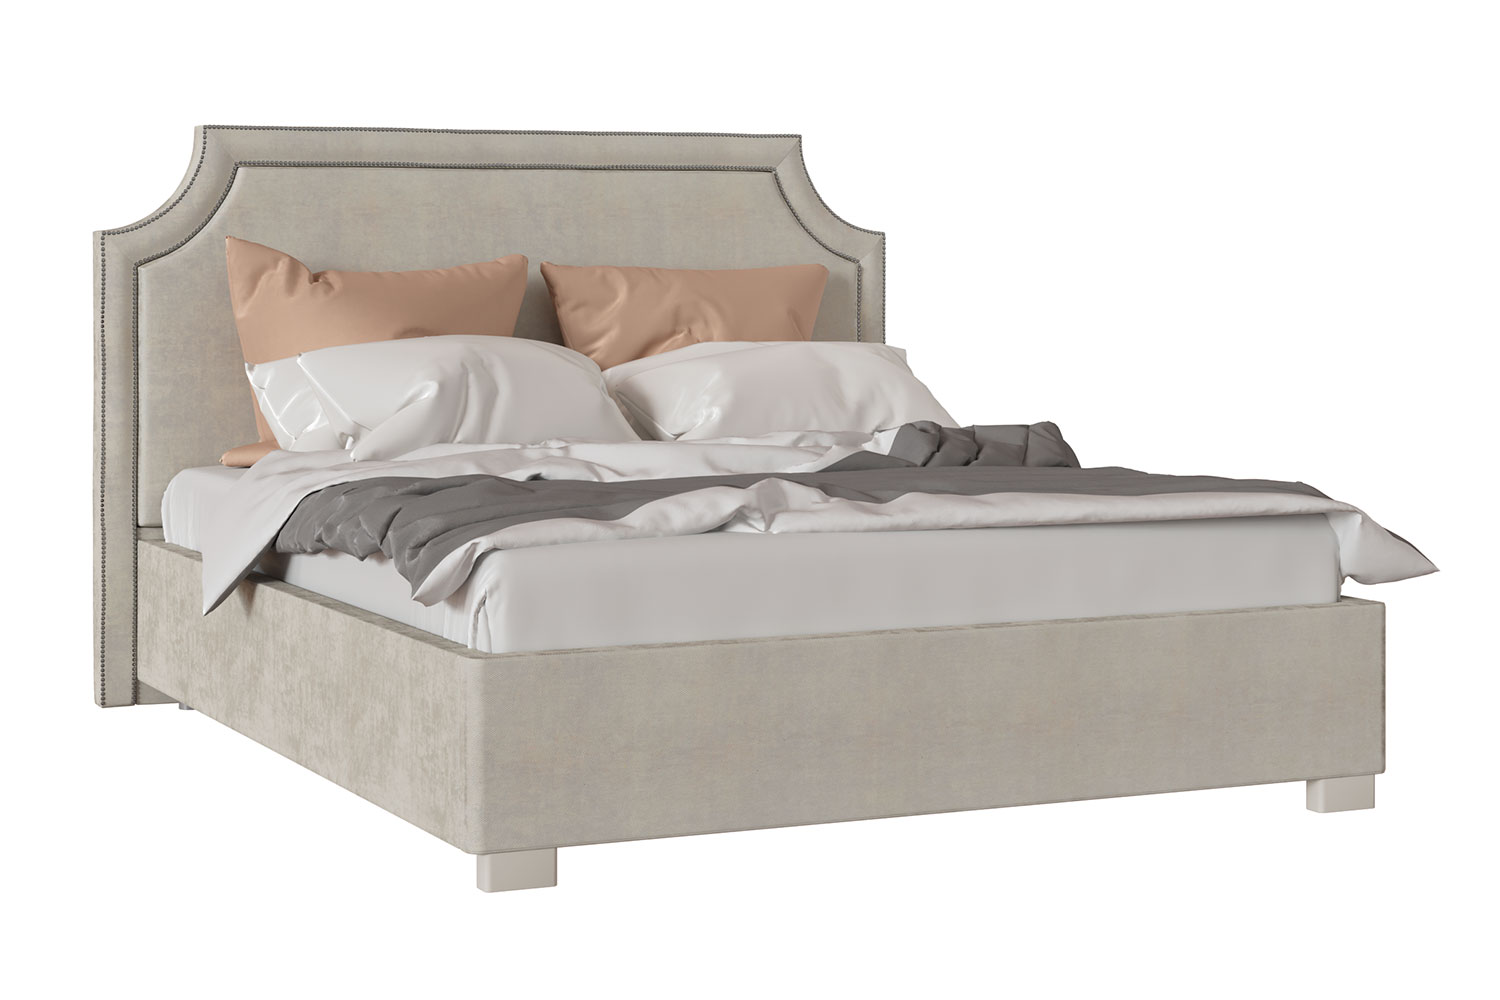 Двуспальные кровати - изображение №2 "Кровать Калгари"  на www.Angstrem-mebel.ru